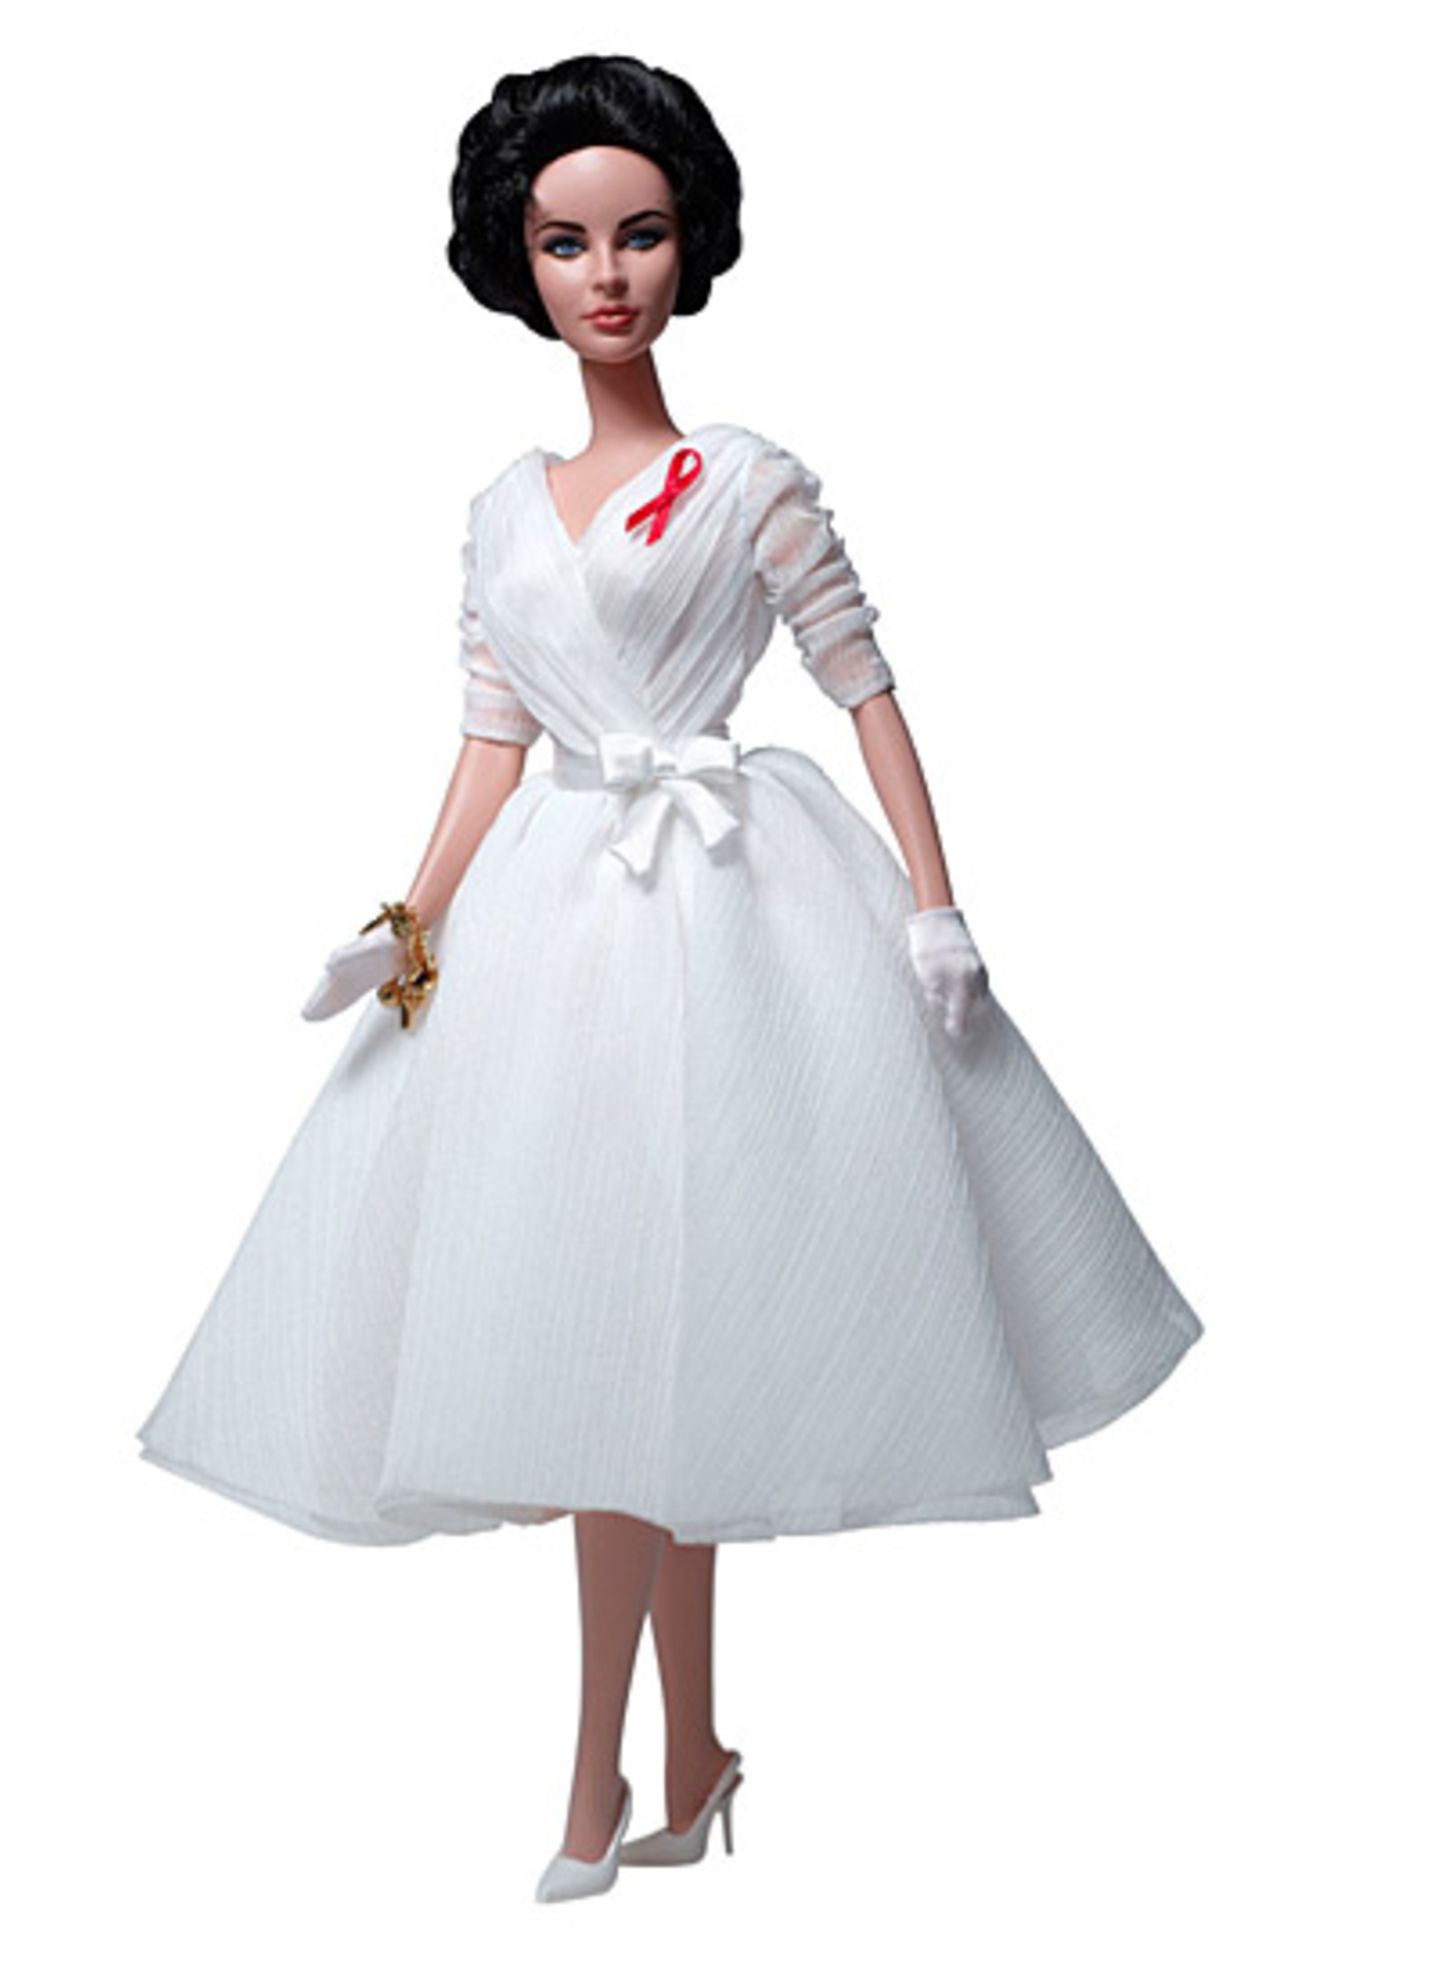 Eine Hommage an Liz Taylor: mit der "White Diamonds Doll" ehrt Mattel die Schauspielerin die Schauspielerin.